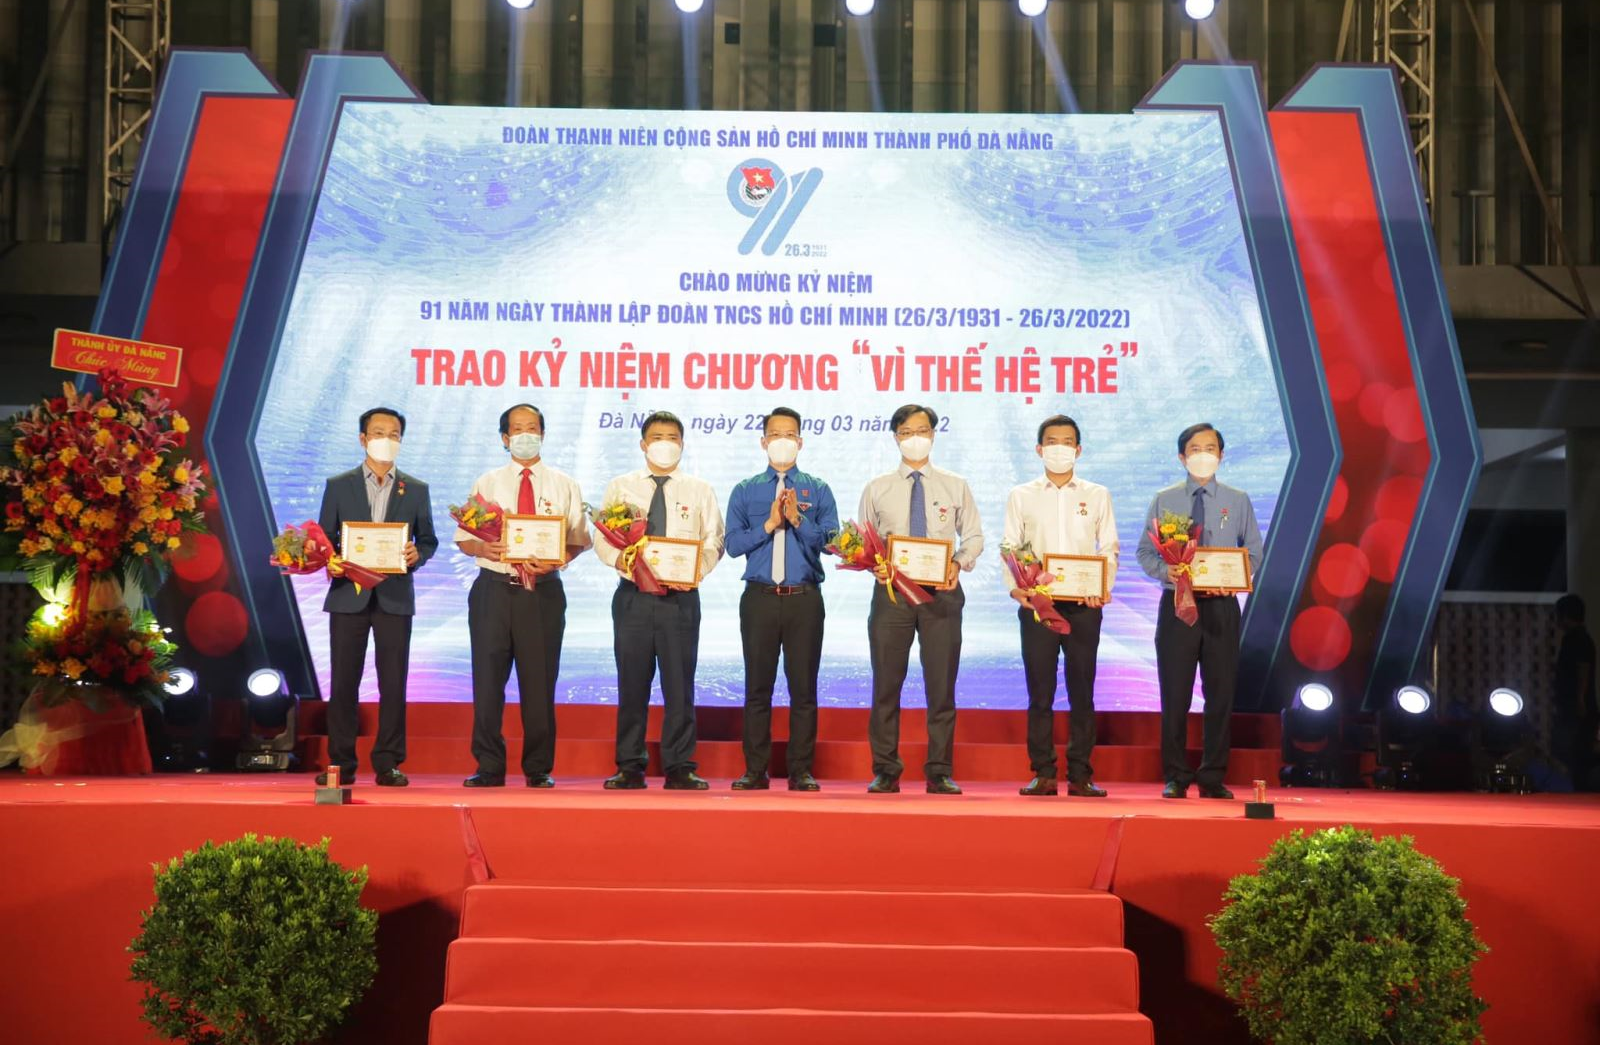 Chương trình kỷ niệm 91 năm Ngày thành lập Đoàn TNCS Hồ Chí Minh (26/3/1931 - 26/3/2022), trao kỷ niệm “Vì thế hệ trẻ” và “Giải thưởng 26/3” năm 2022